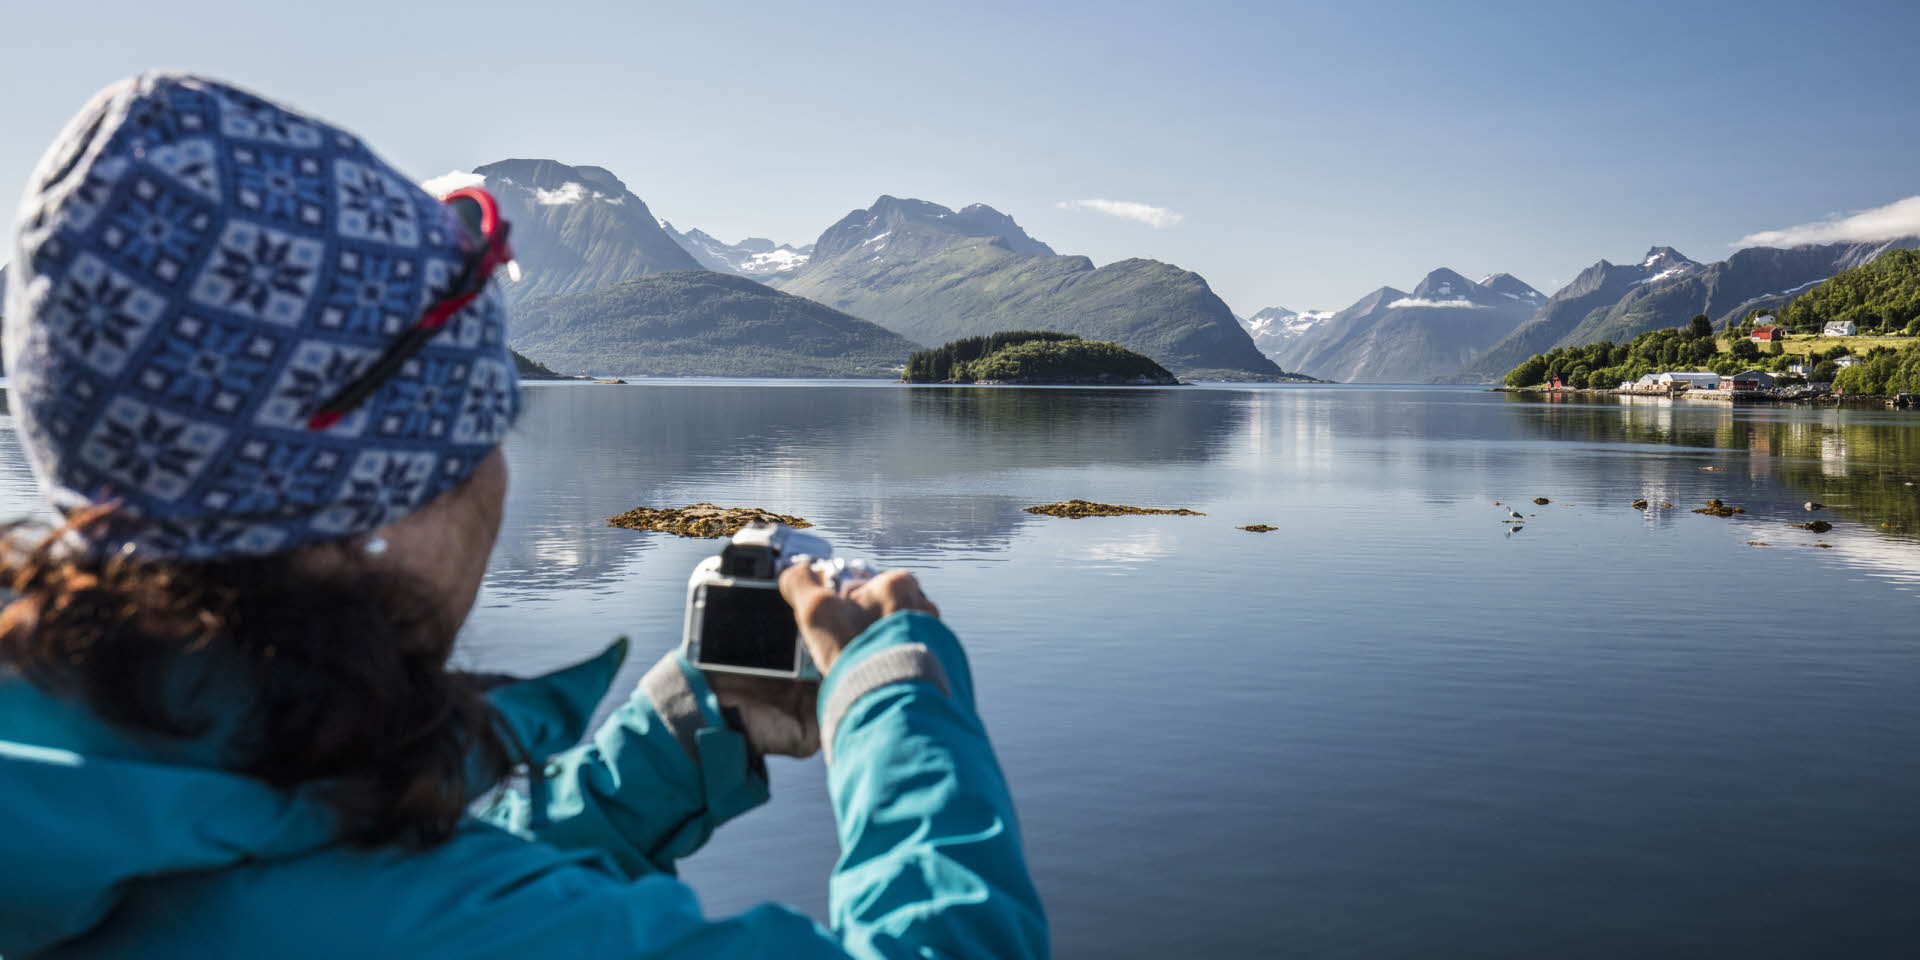 フィヨルドクルーズ船上で写真を撮る女性 ヨルンフィヨルド(hjørundfjord) 美しいフィヨルド 